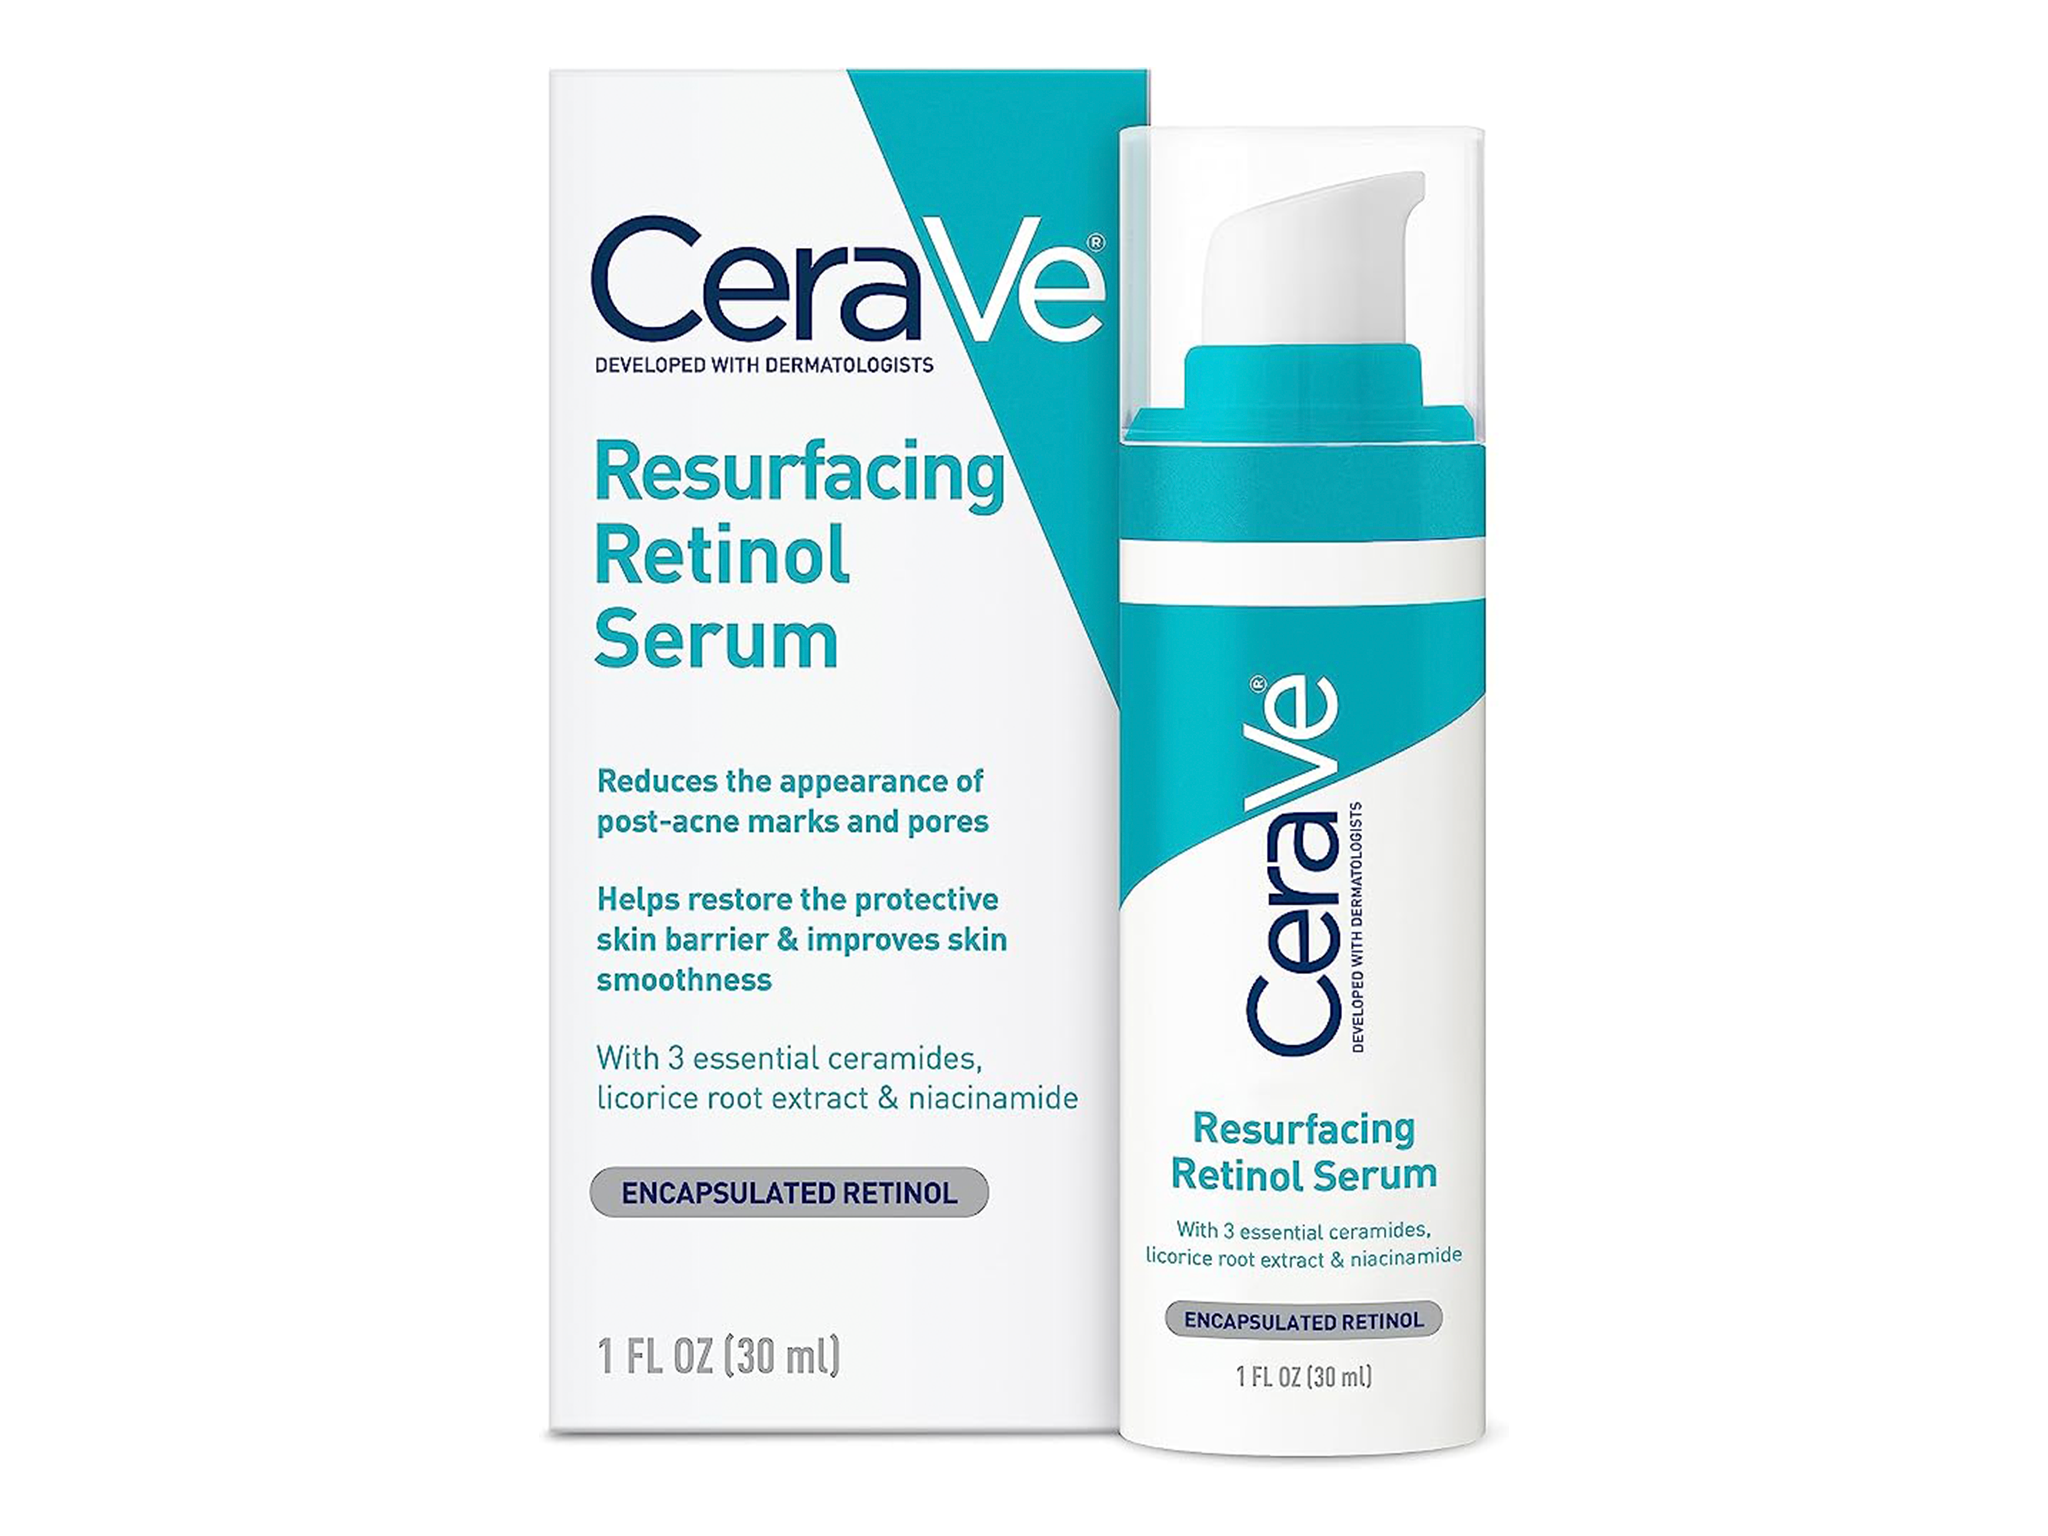 Cerave-retinol-indybest